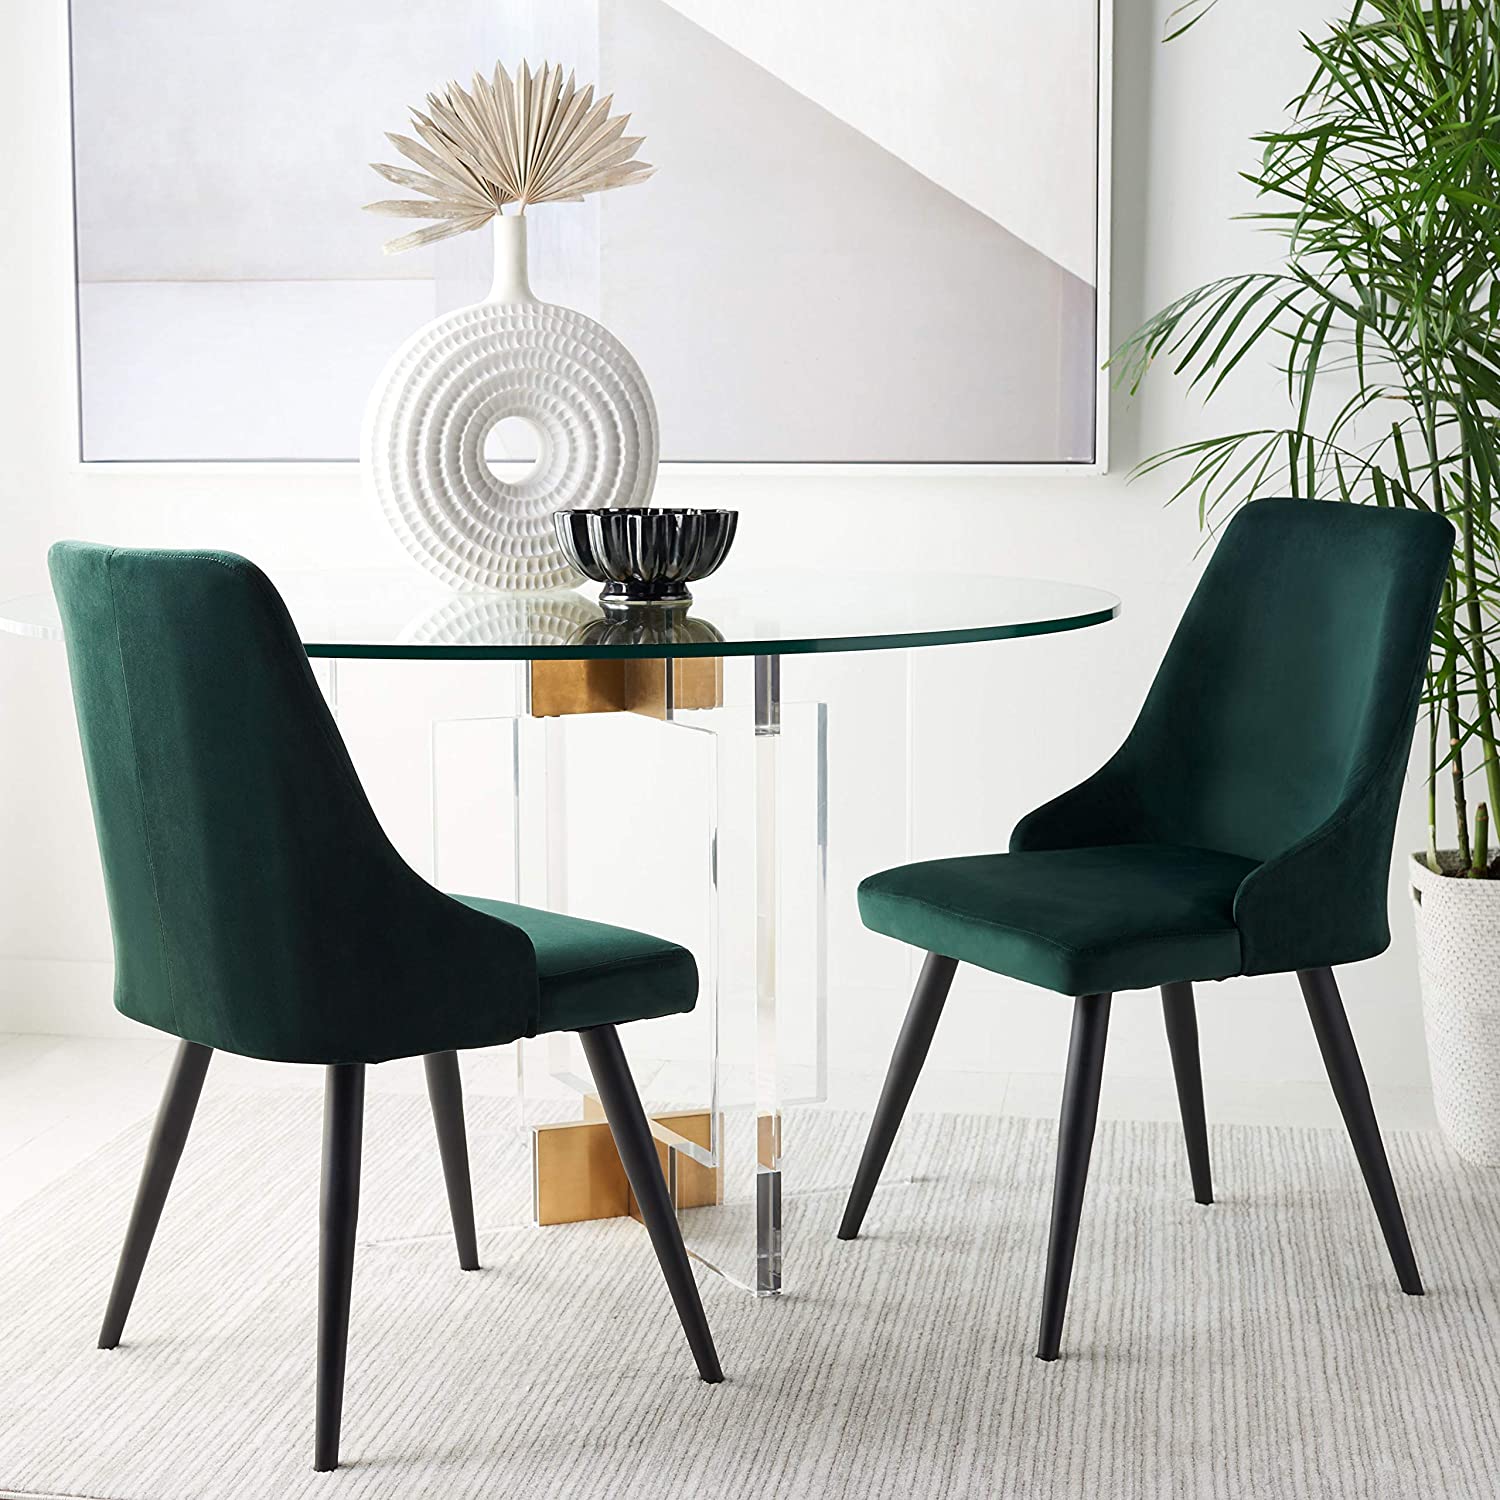 Velvet Green Upholstered Dining Chairs, Green Upholstered Dining Room Chairs